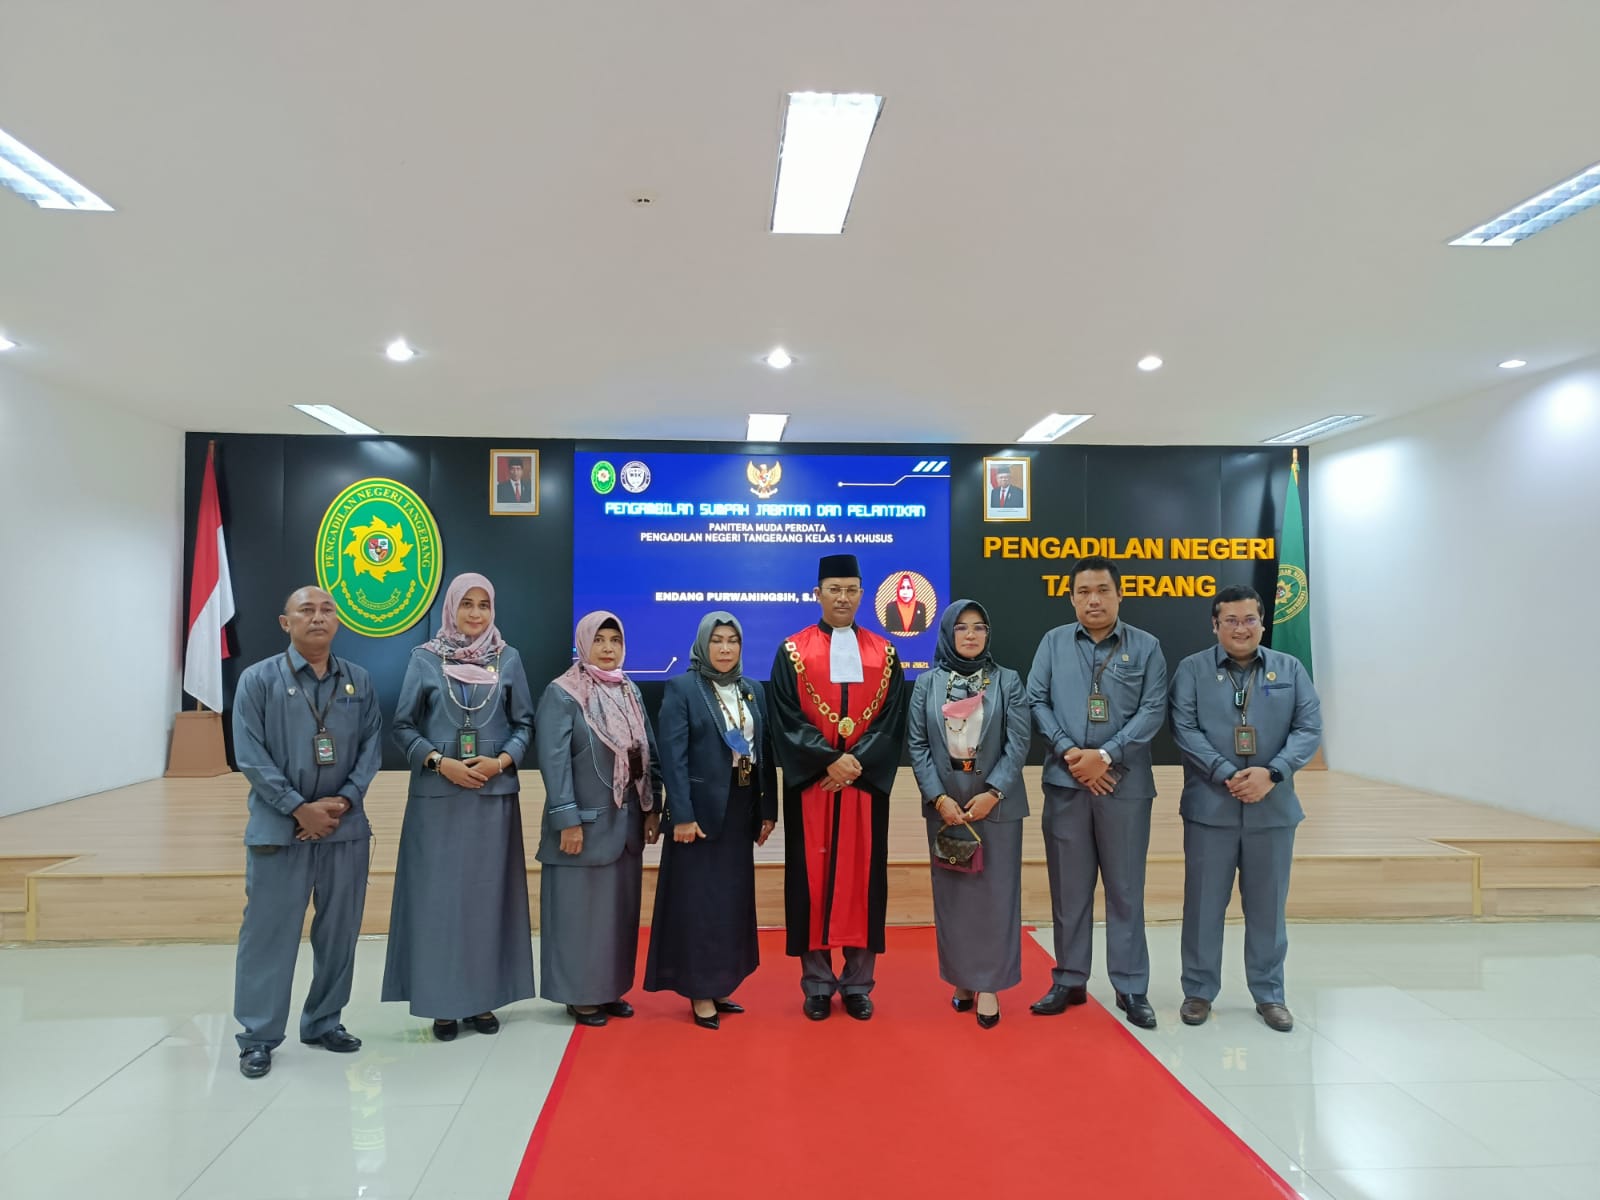 Ketua Pengadilan Pengadilan Negeri (PNI) Tangerang Kelas 1A Khusus Minanoer Rachman meminta agar pelayanan perdata bisa dipercepat di aula lantai 5 Gedung Pengadilan Negeri Kelas 1A Khusus, Rabu 1 Desember 2021.